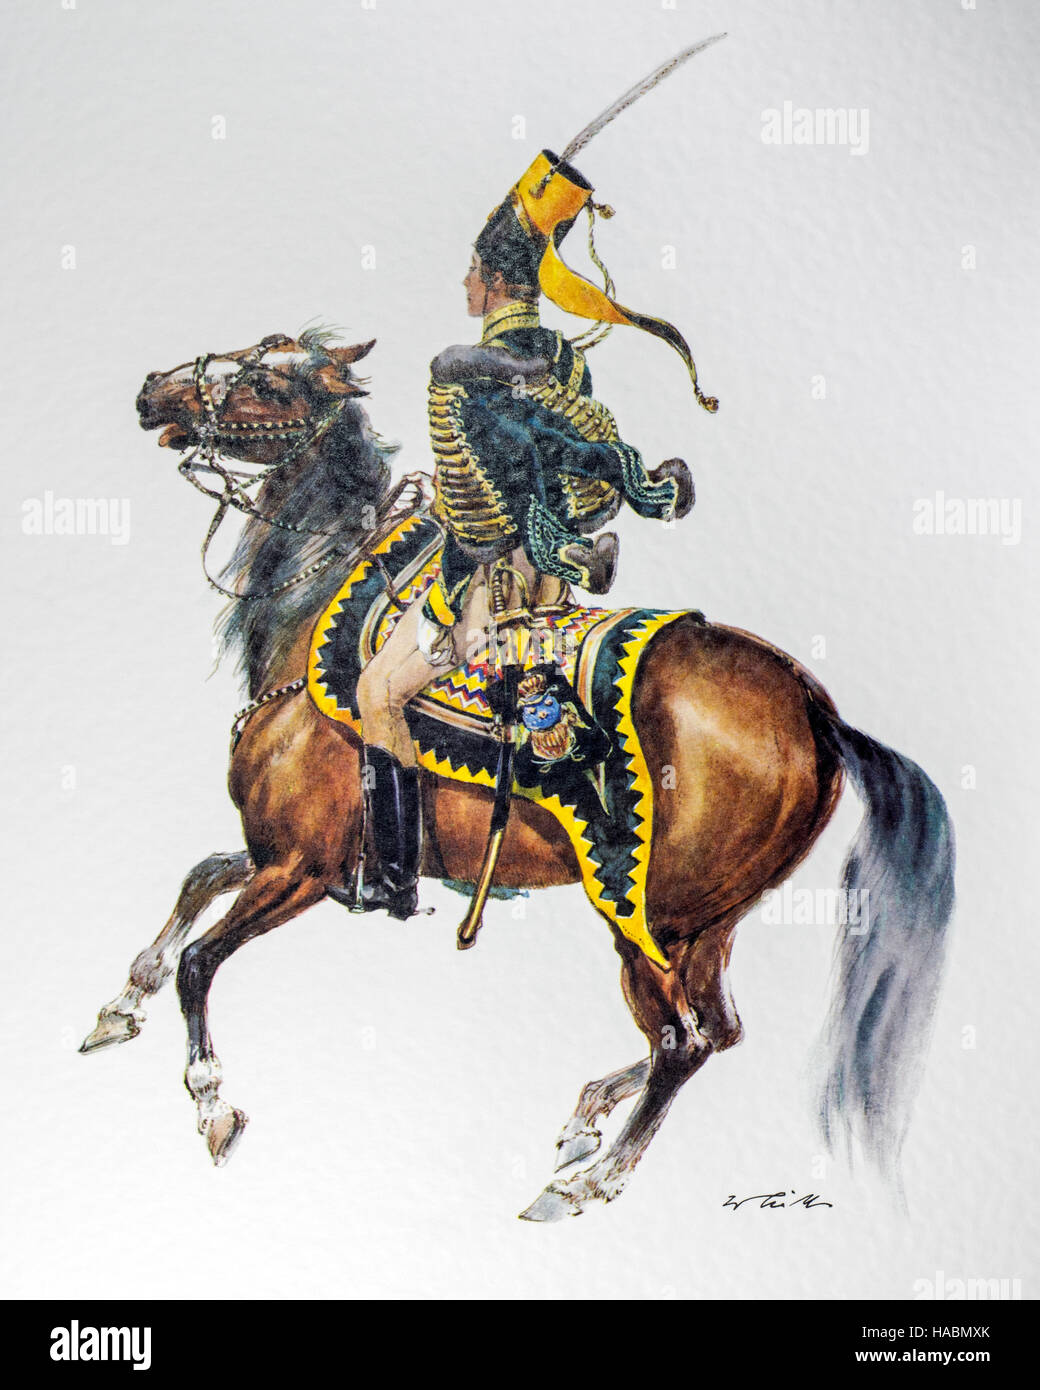 Schwedische Offizier auf dem Pferderücken in Uniform von 1837-Husaren-Regiment "Kronprinz" Stockfoto